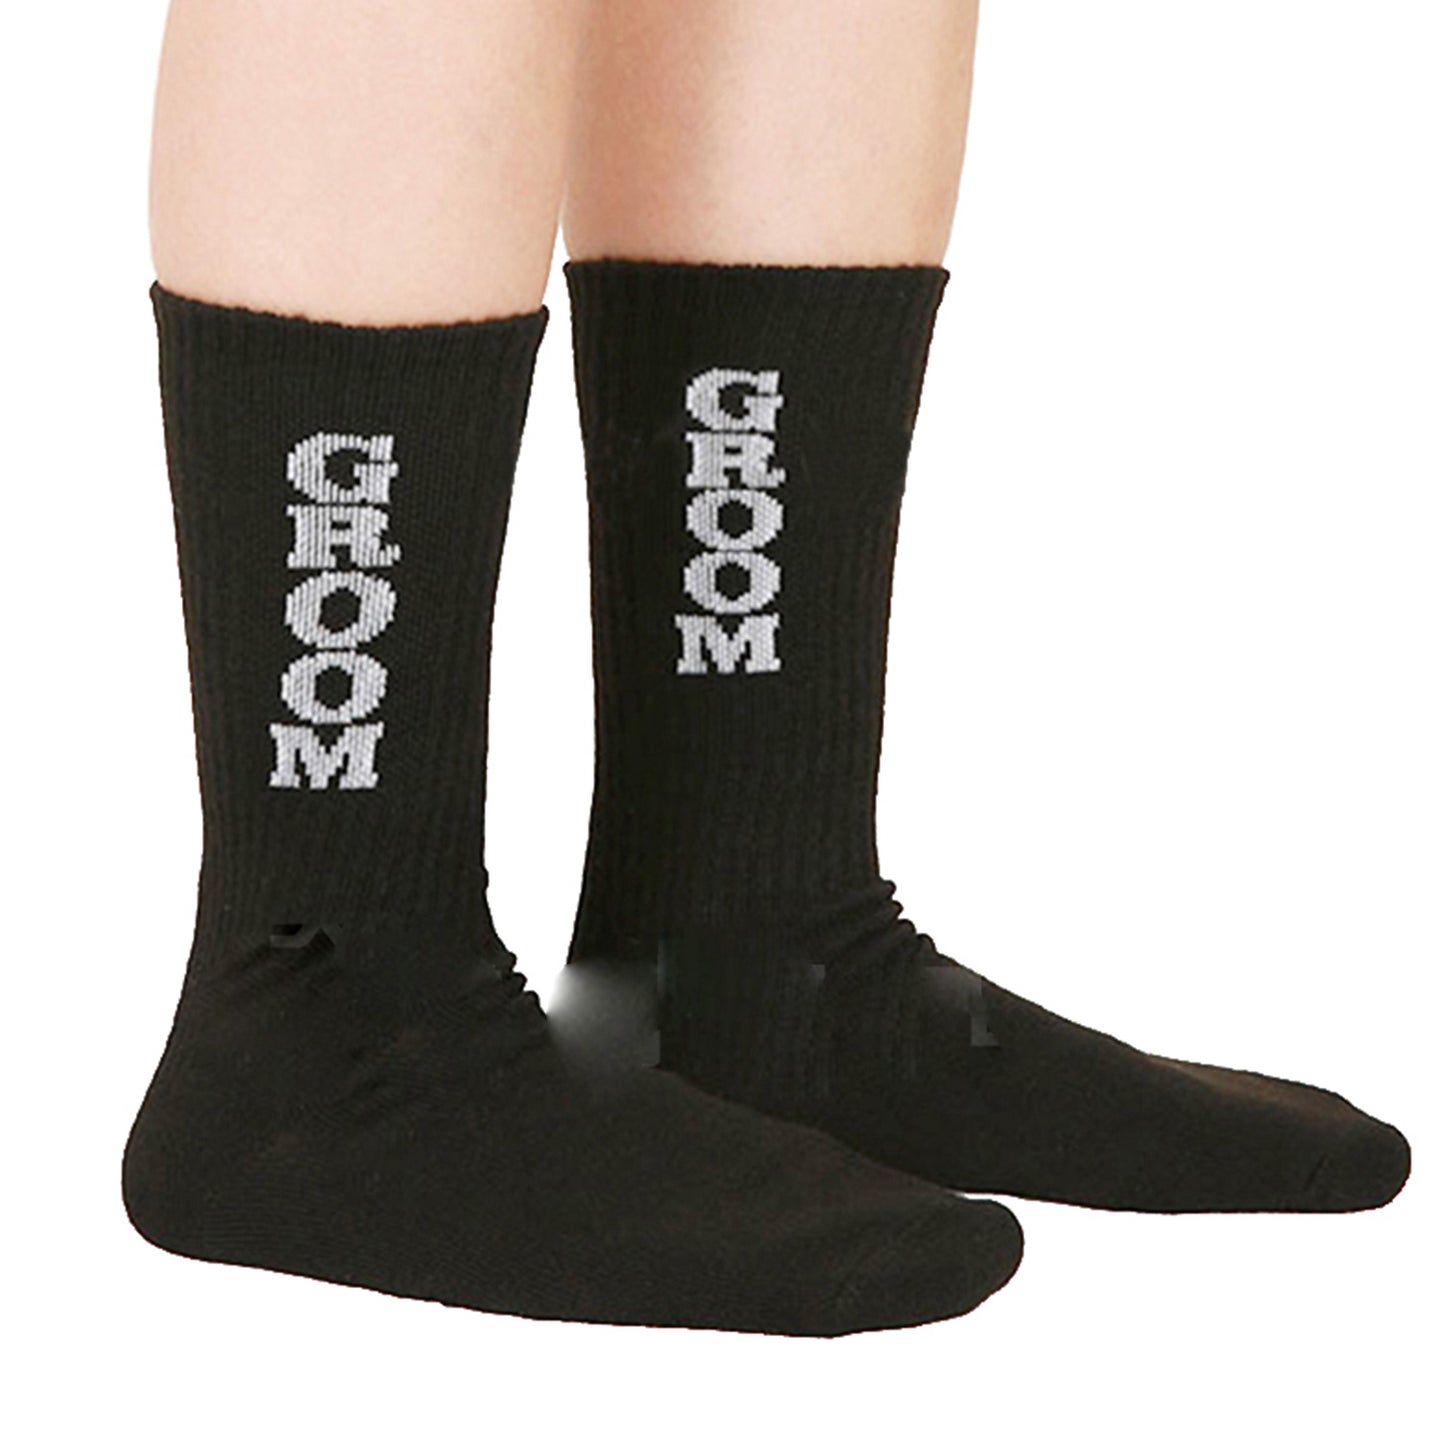 Best Man Groom Groomsman Socks